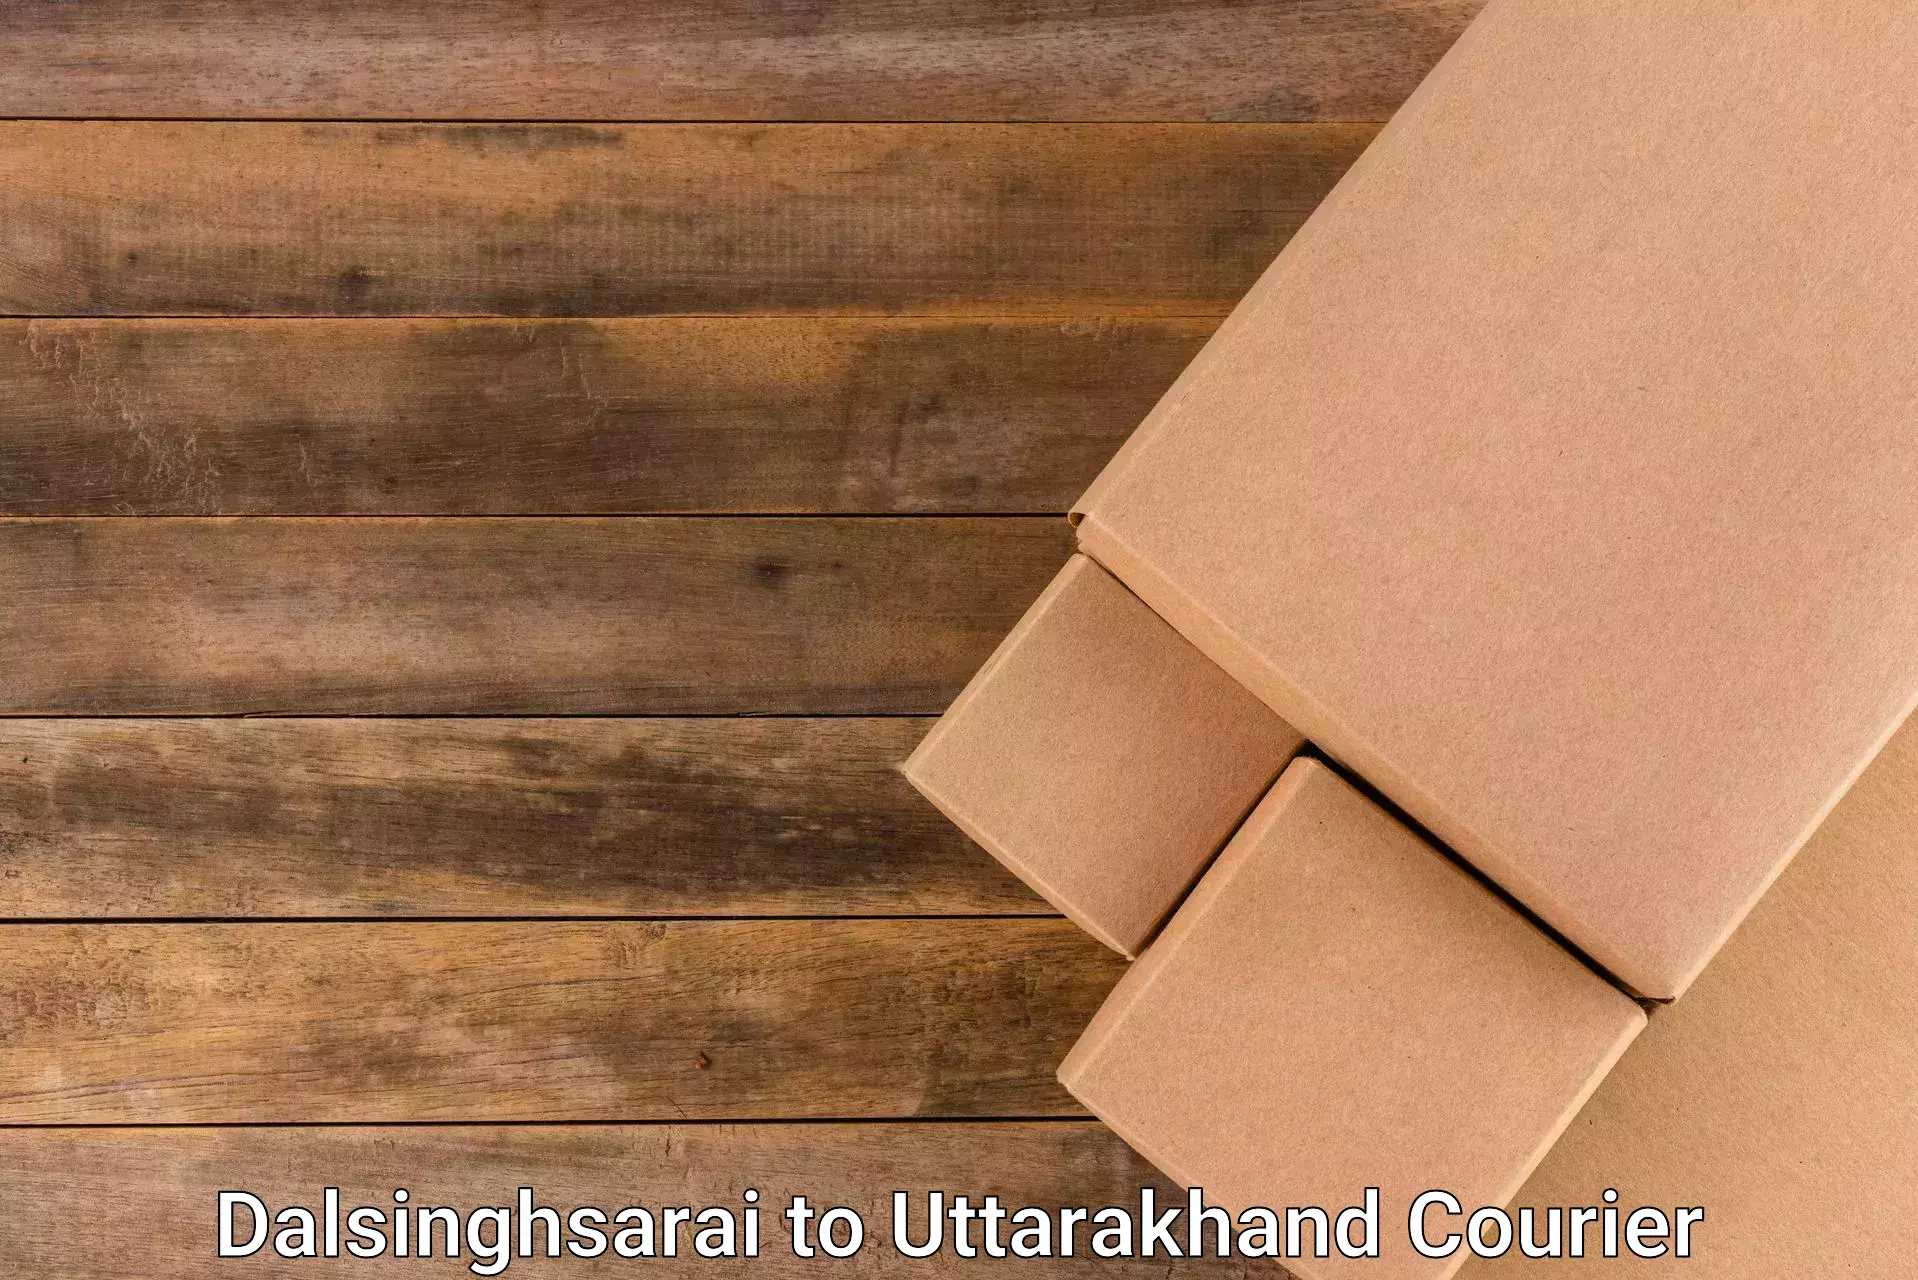 Local delivery service Dalsinghsarai to Pithoragarh